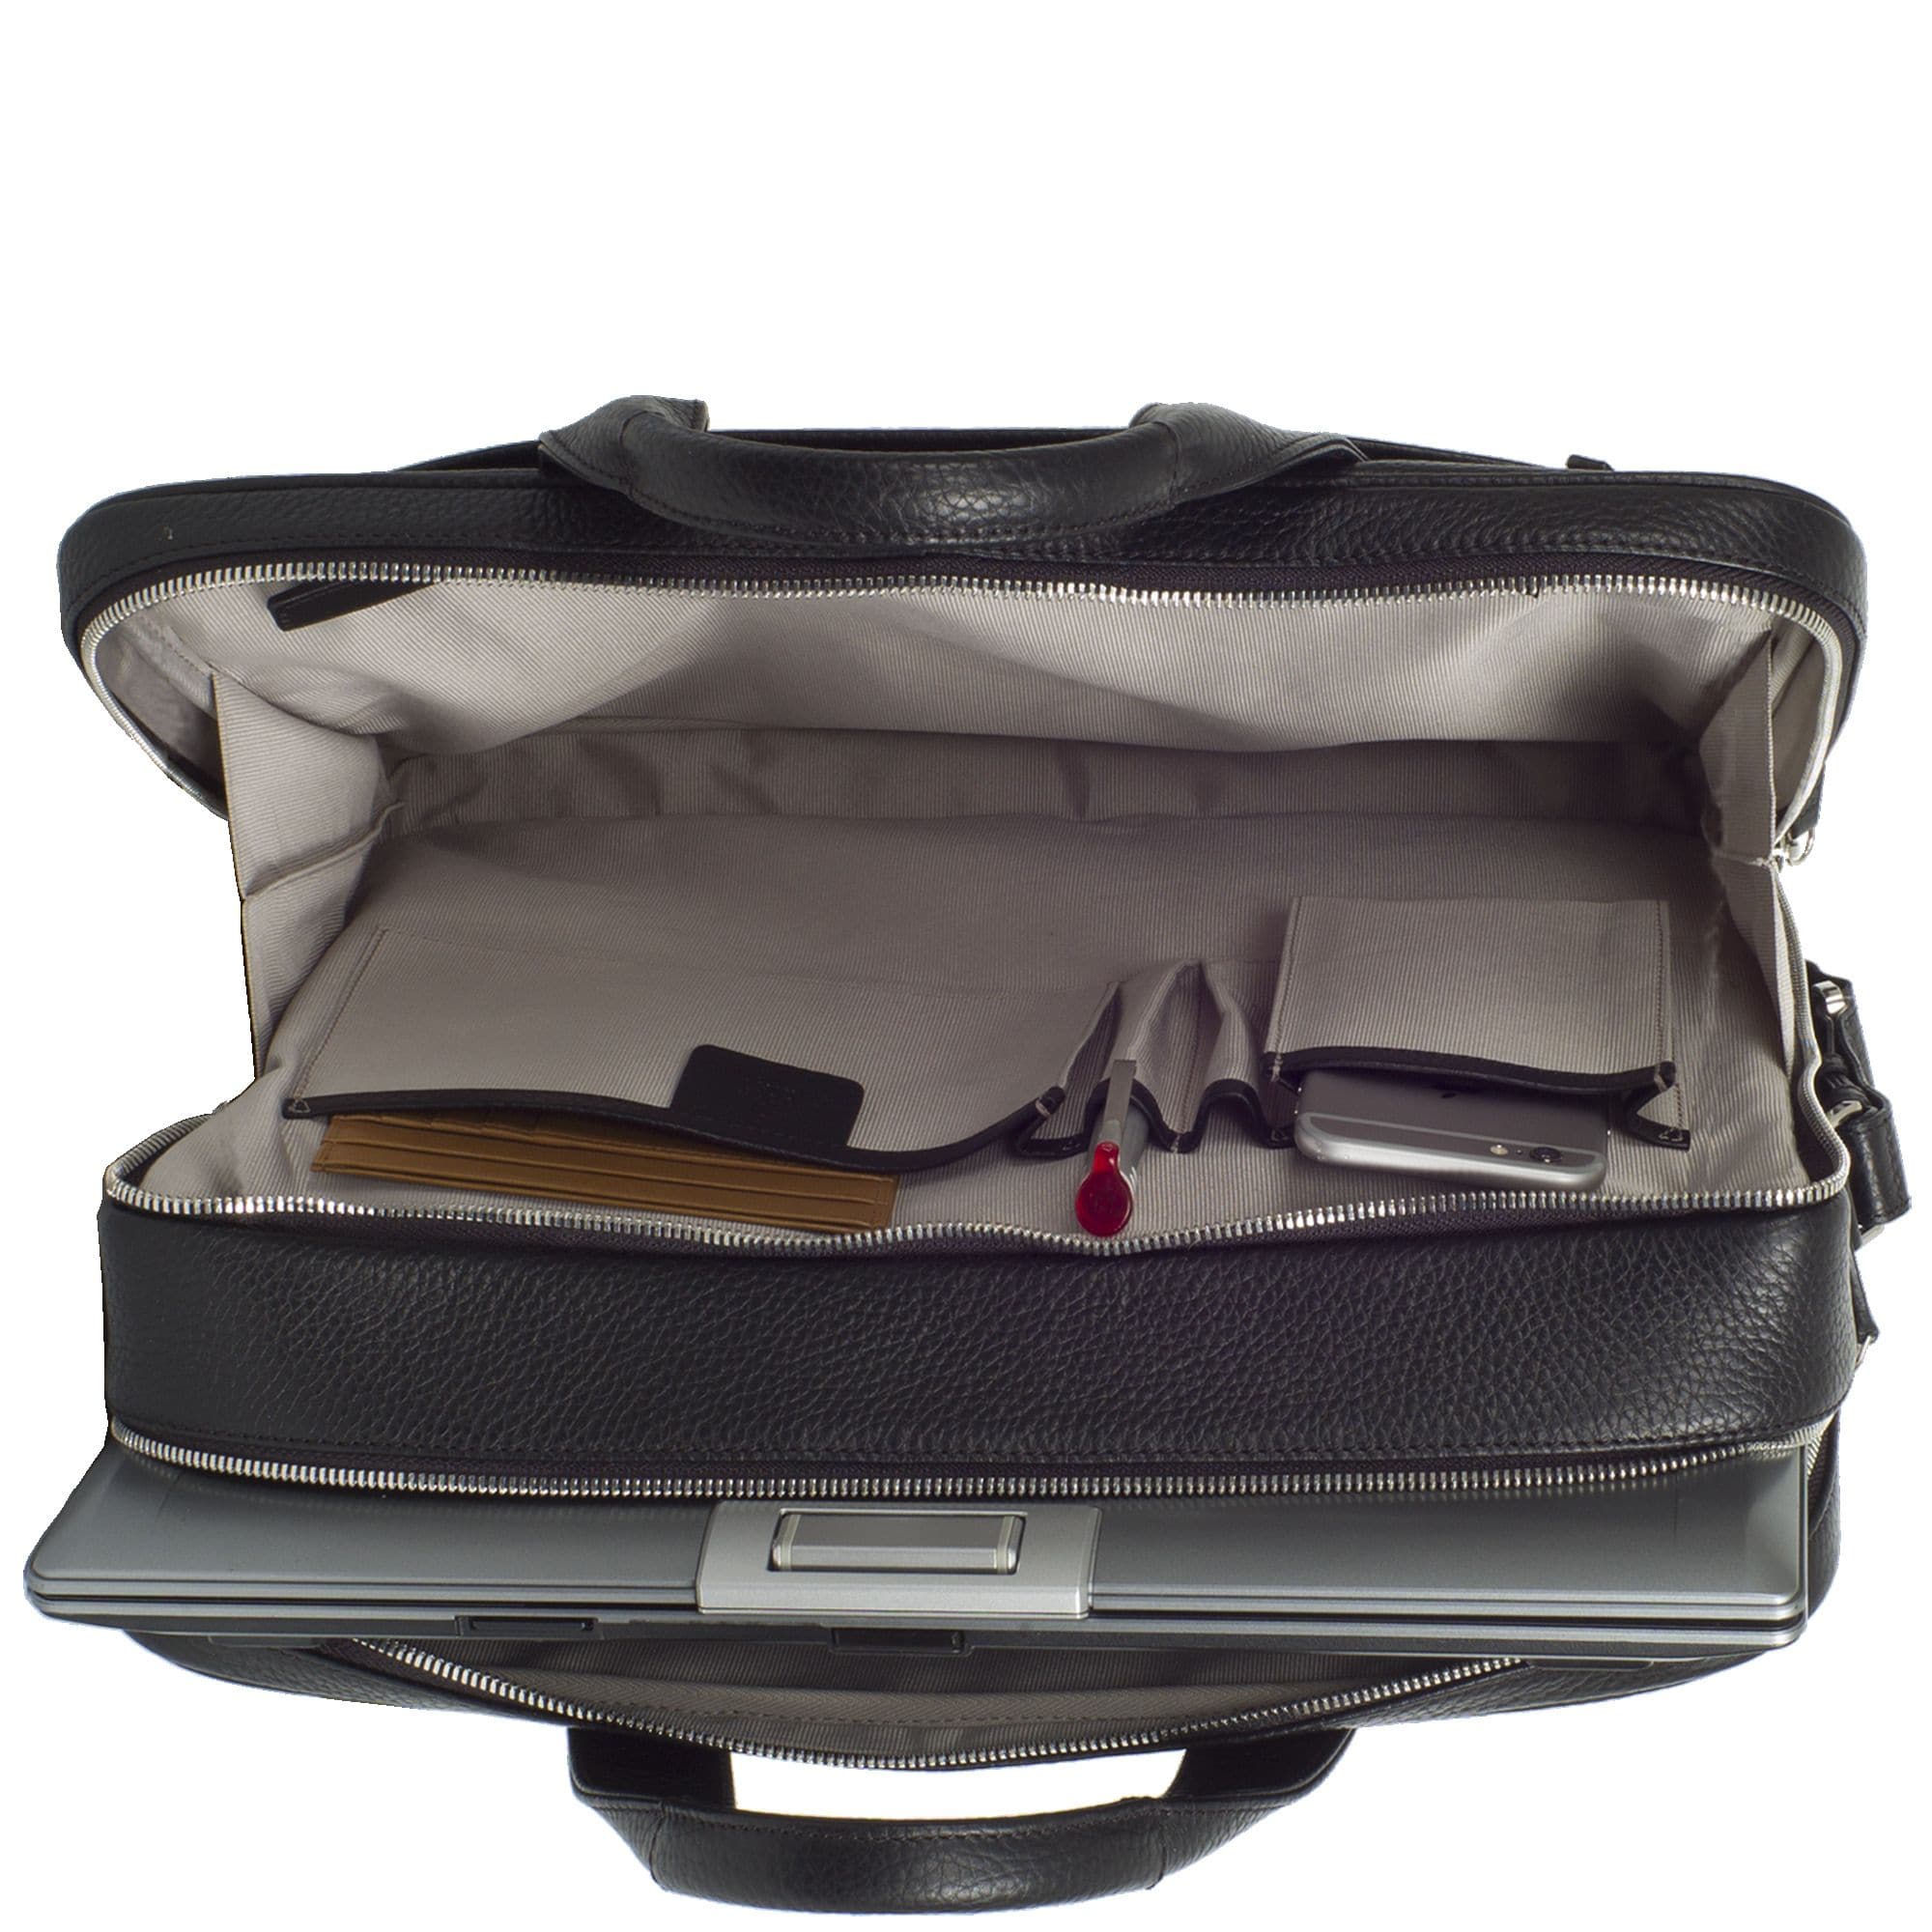 Businesstasche Laptoptasche 15 Zoll leicht genarbtes Leder schwarz 2 große Fächer